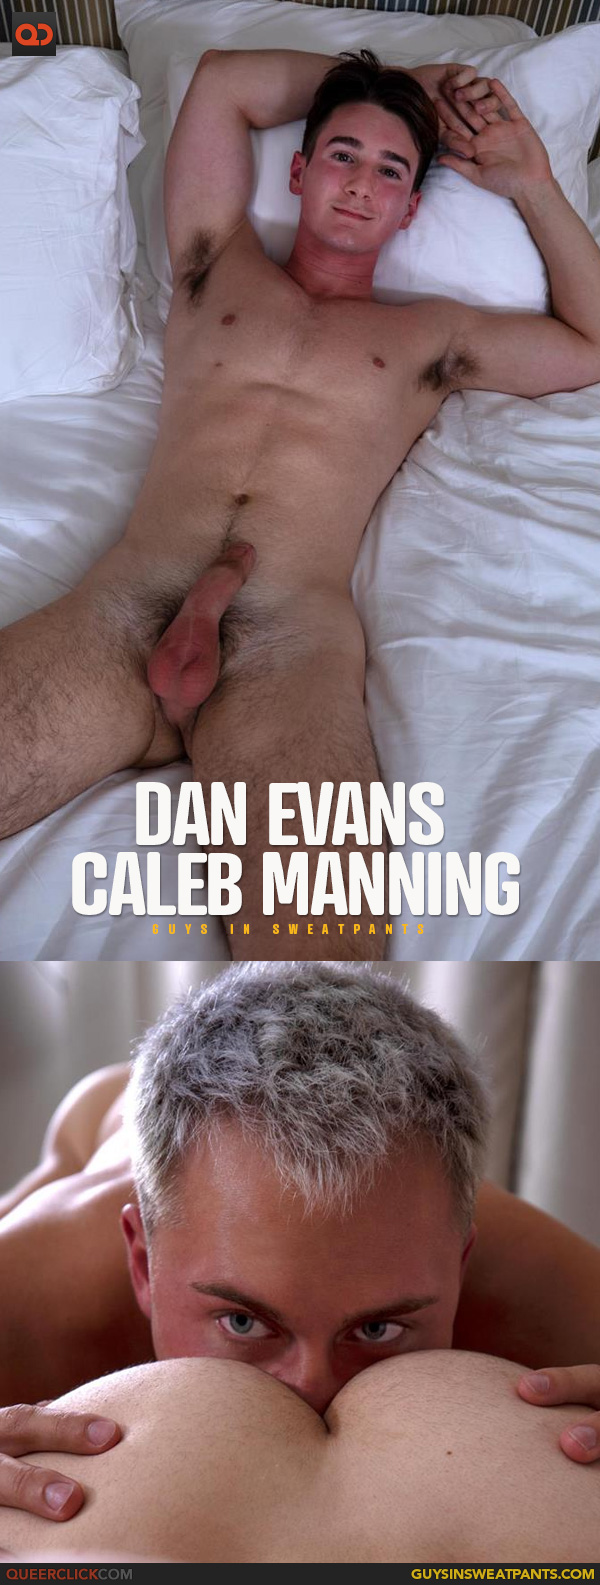 Guys in Sweatpants: Dan Evans and Caleb Manning